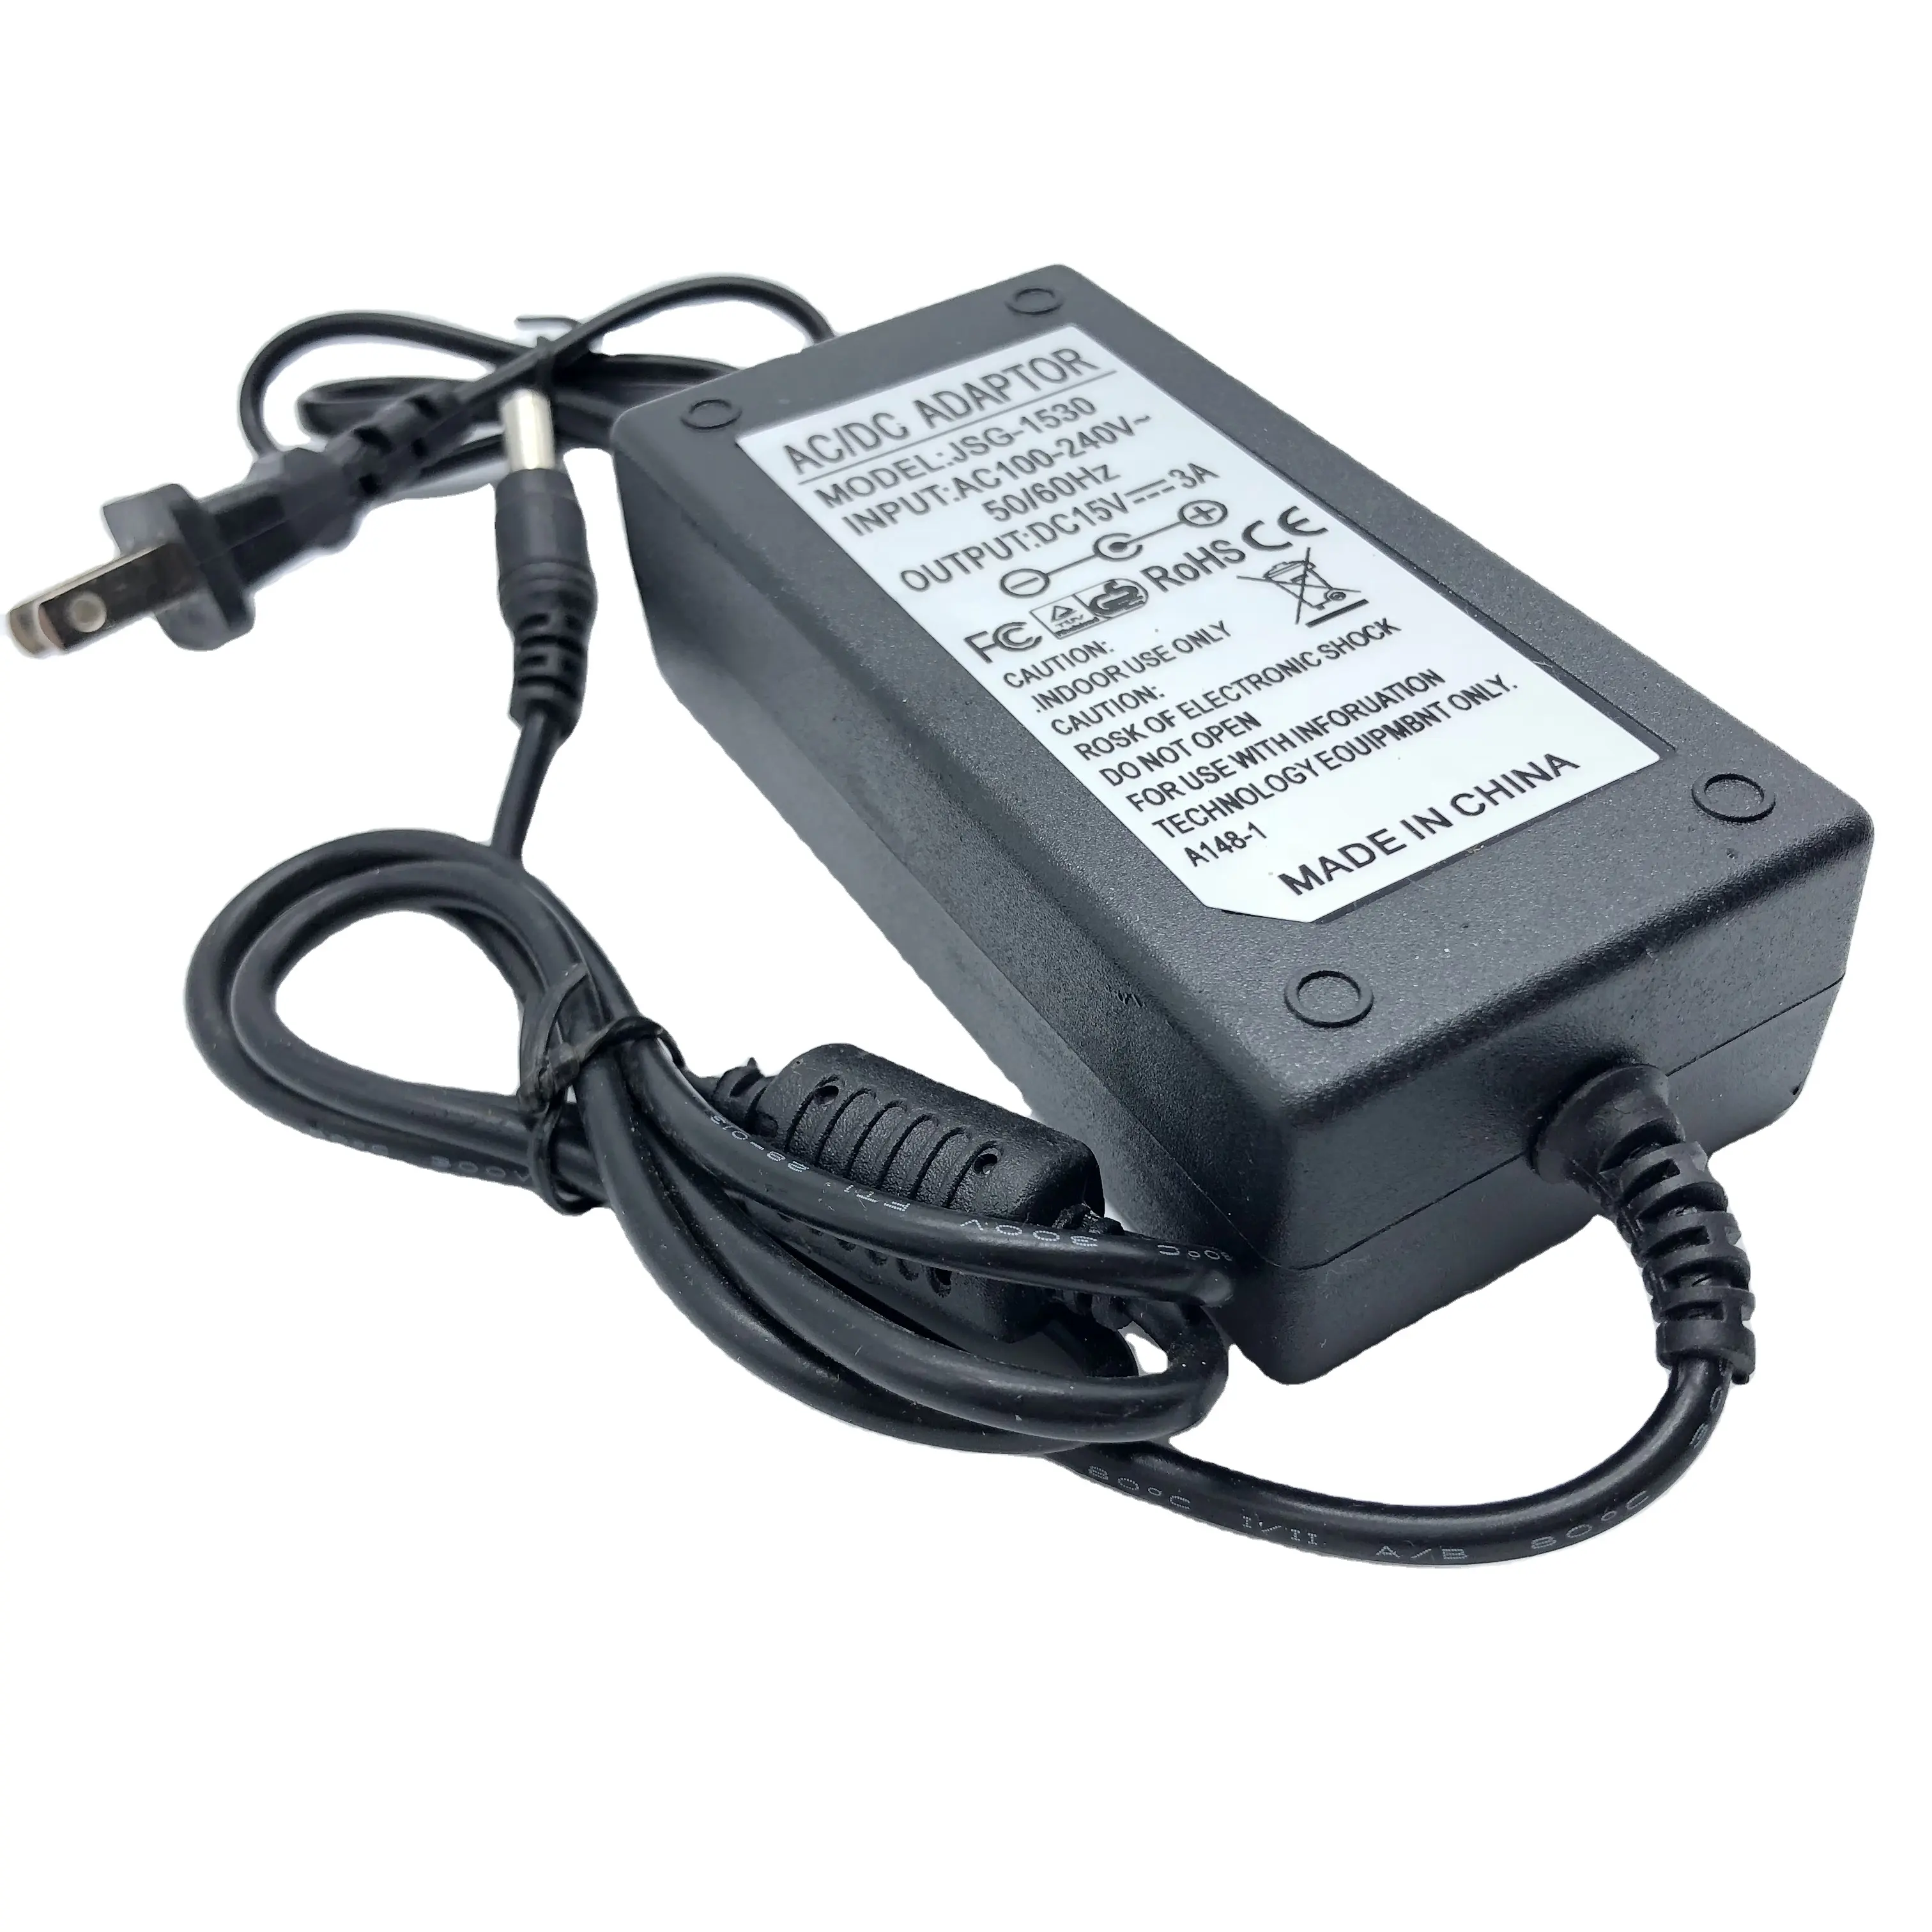 DC AC Netzteil 15 V3A Netzteil Audio Ladegerät 15 V3A Video Player Schalt netzteil Adapter